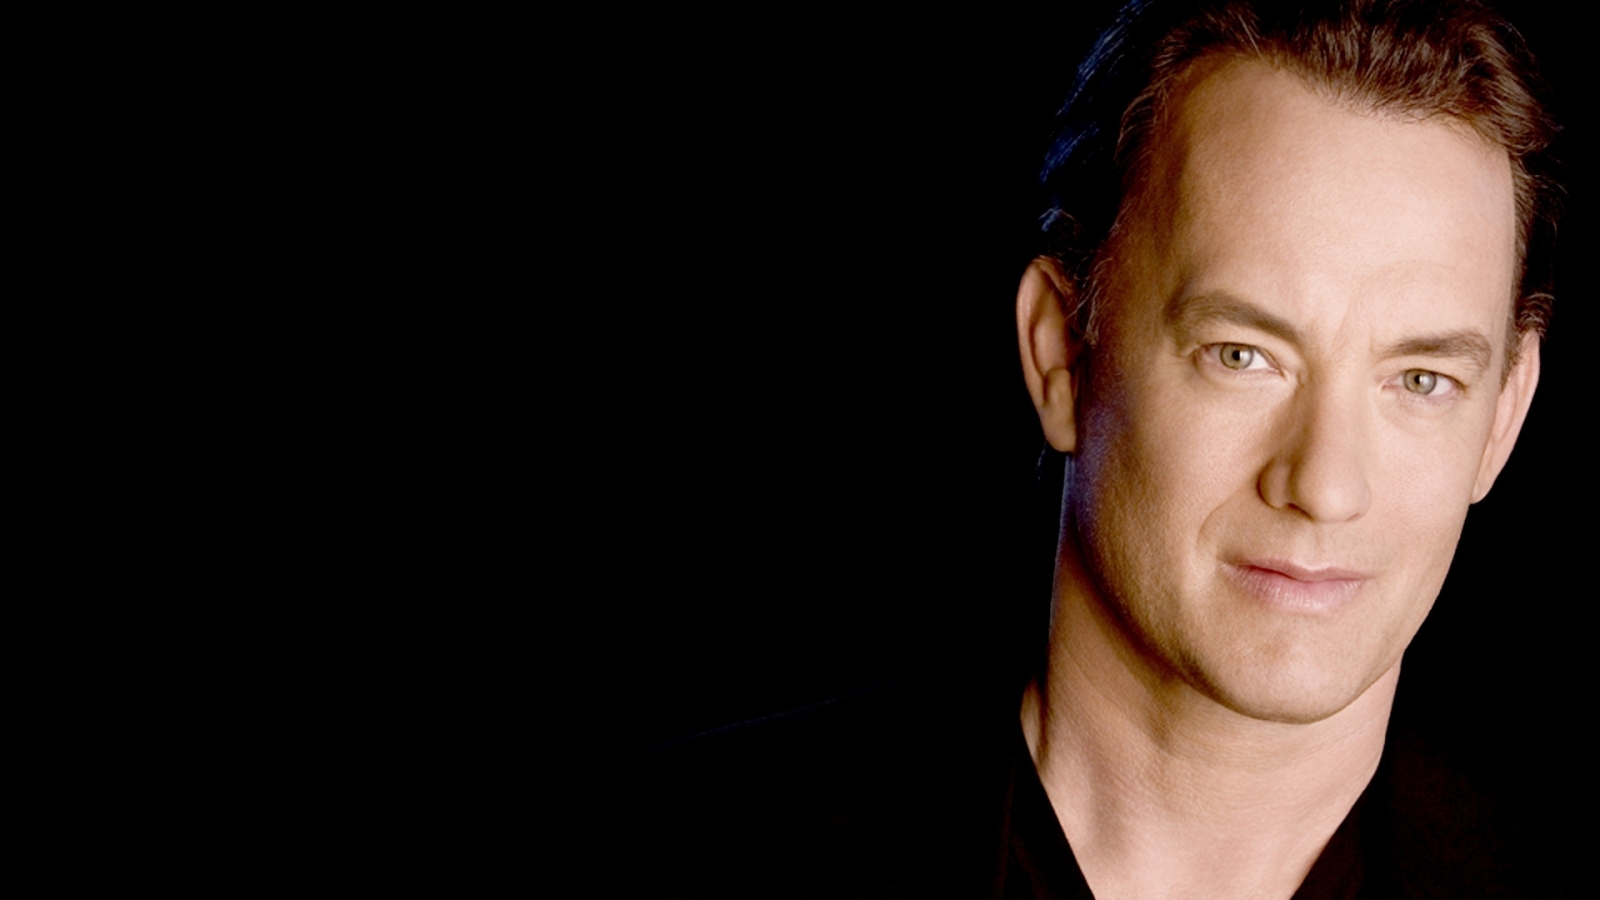 Tom Hanks for 1600 x 900 HDTV resolution